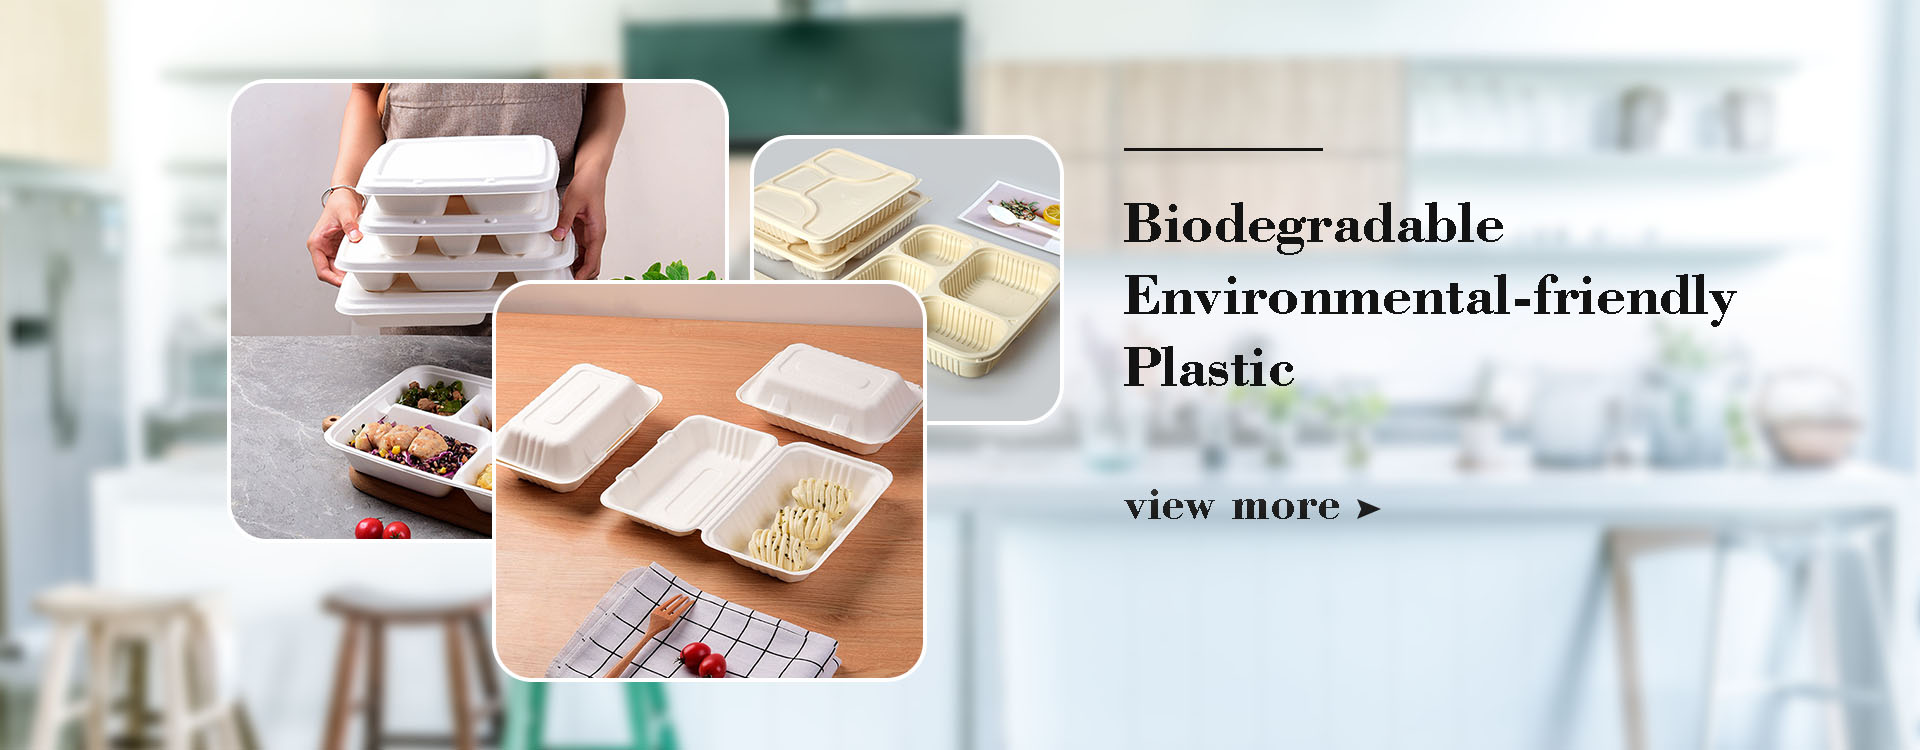 Китайские производители биоразлагаемых экологически чистых пластмасс